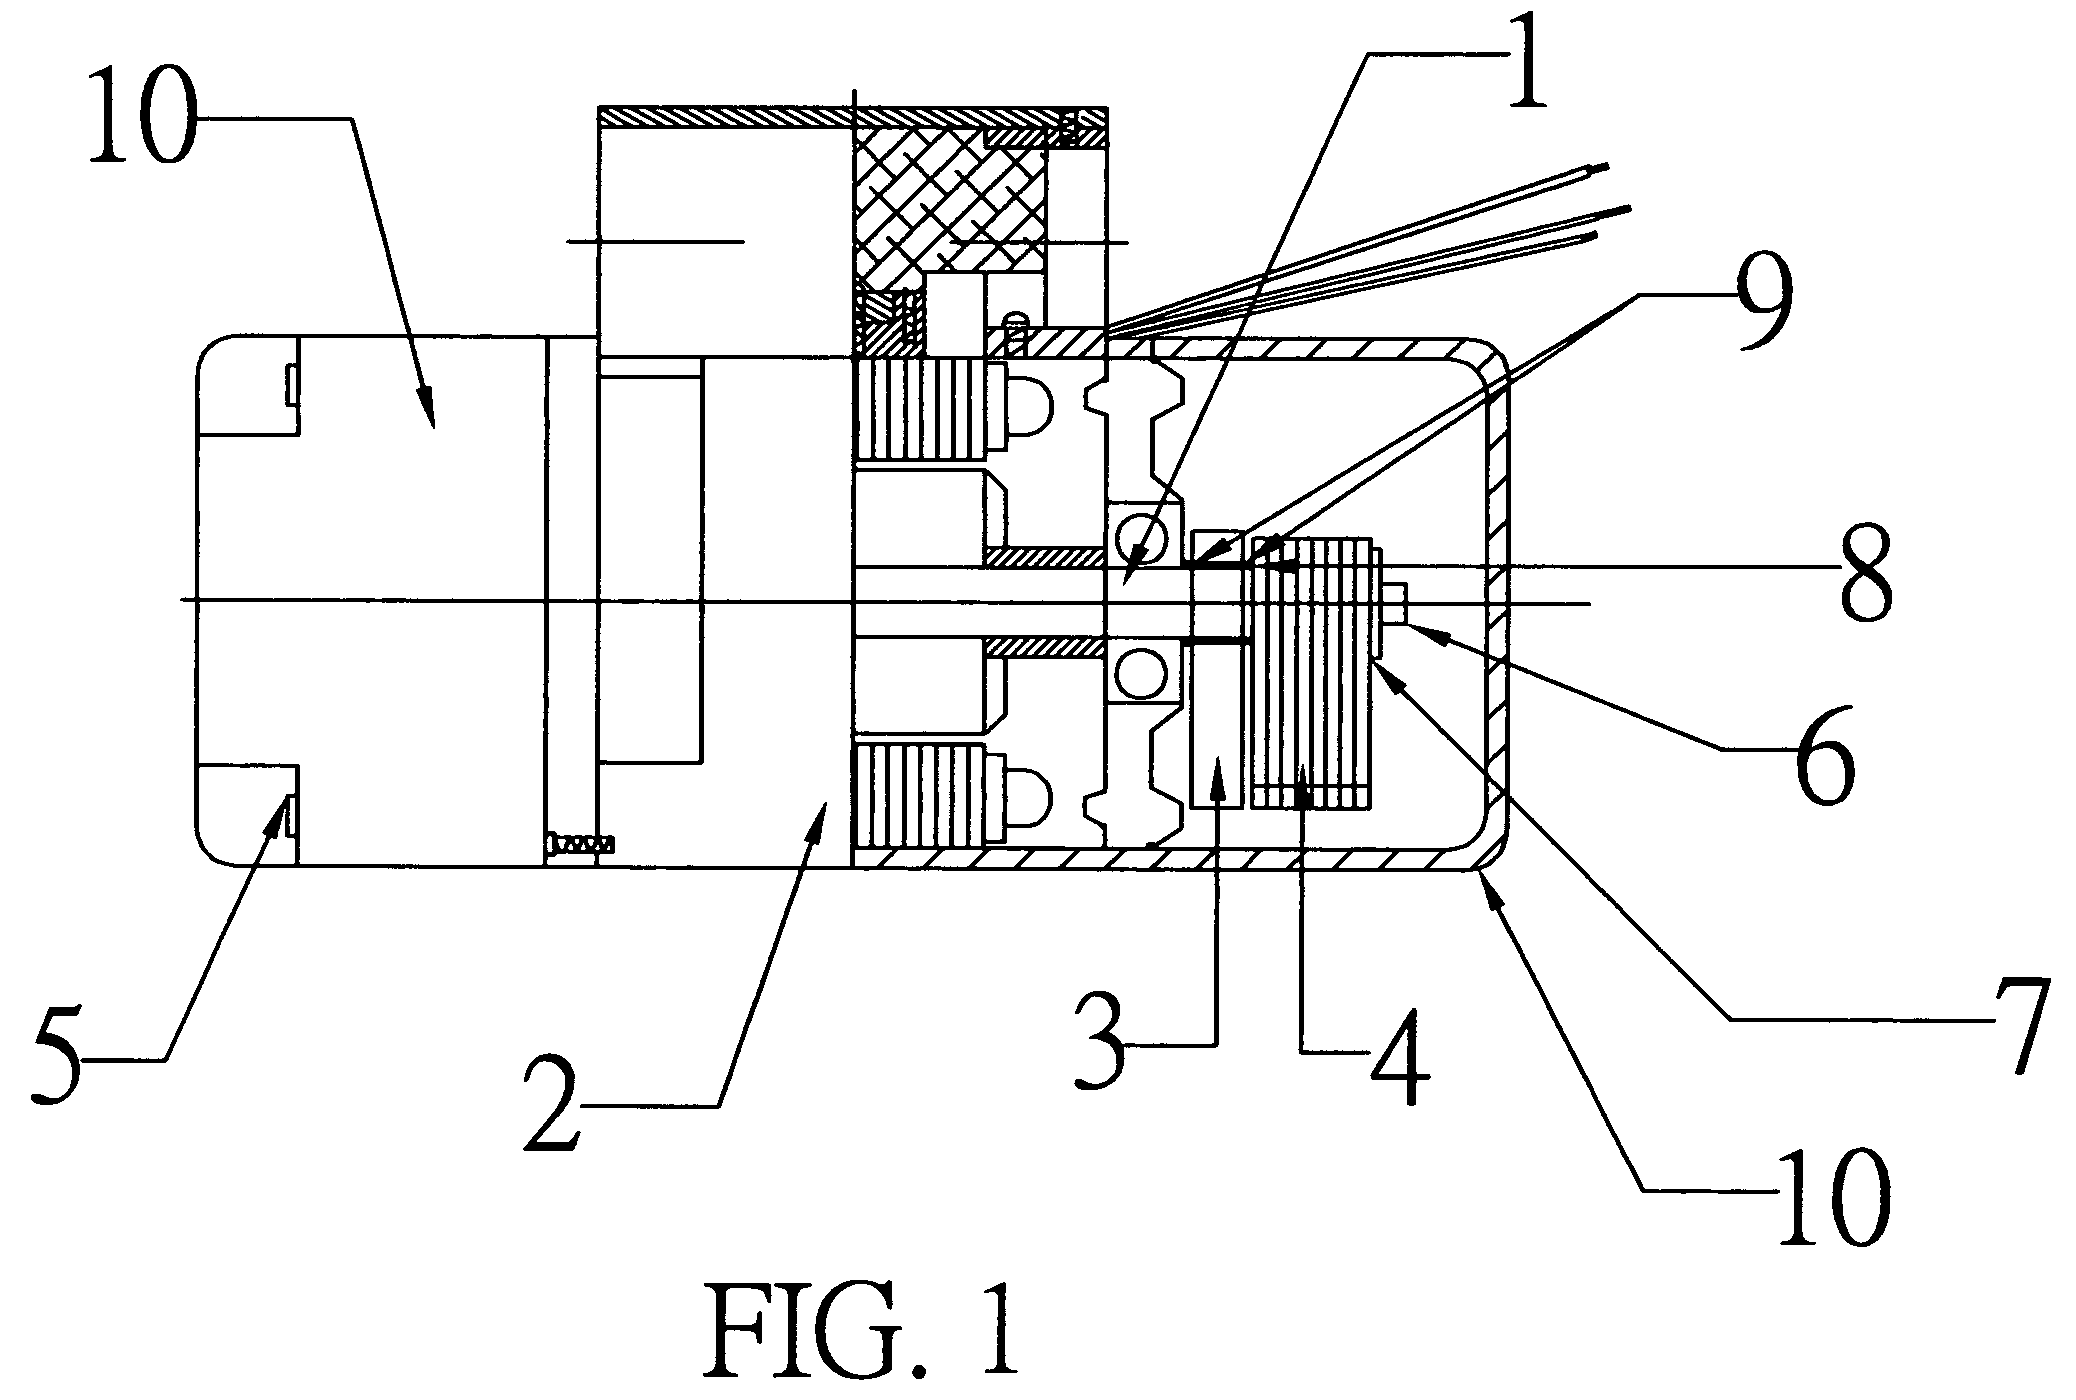 Three-phase induction motor